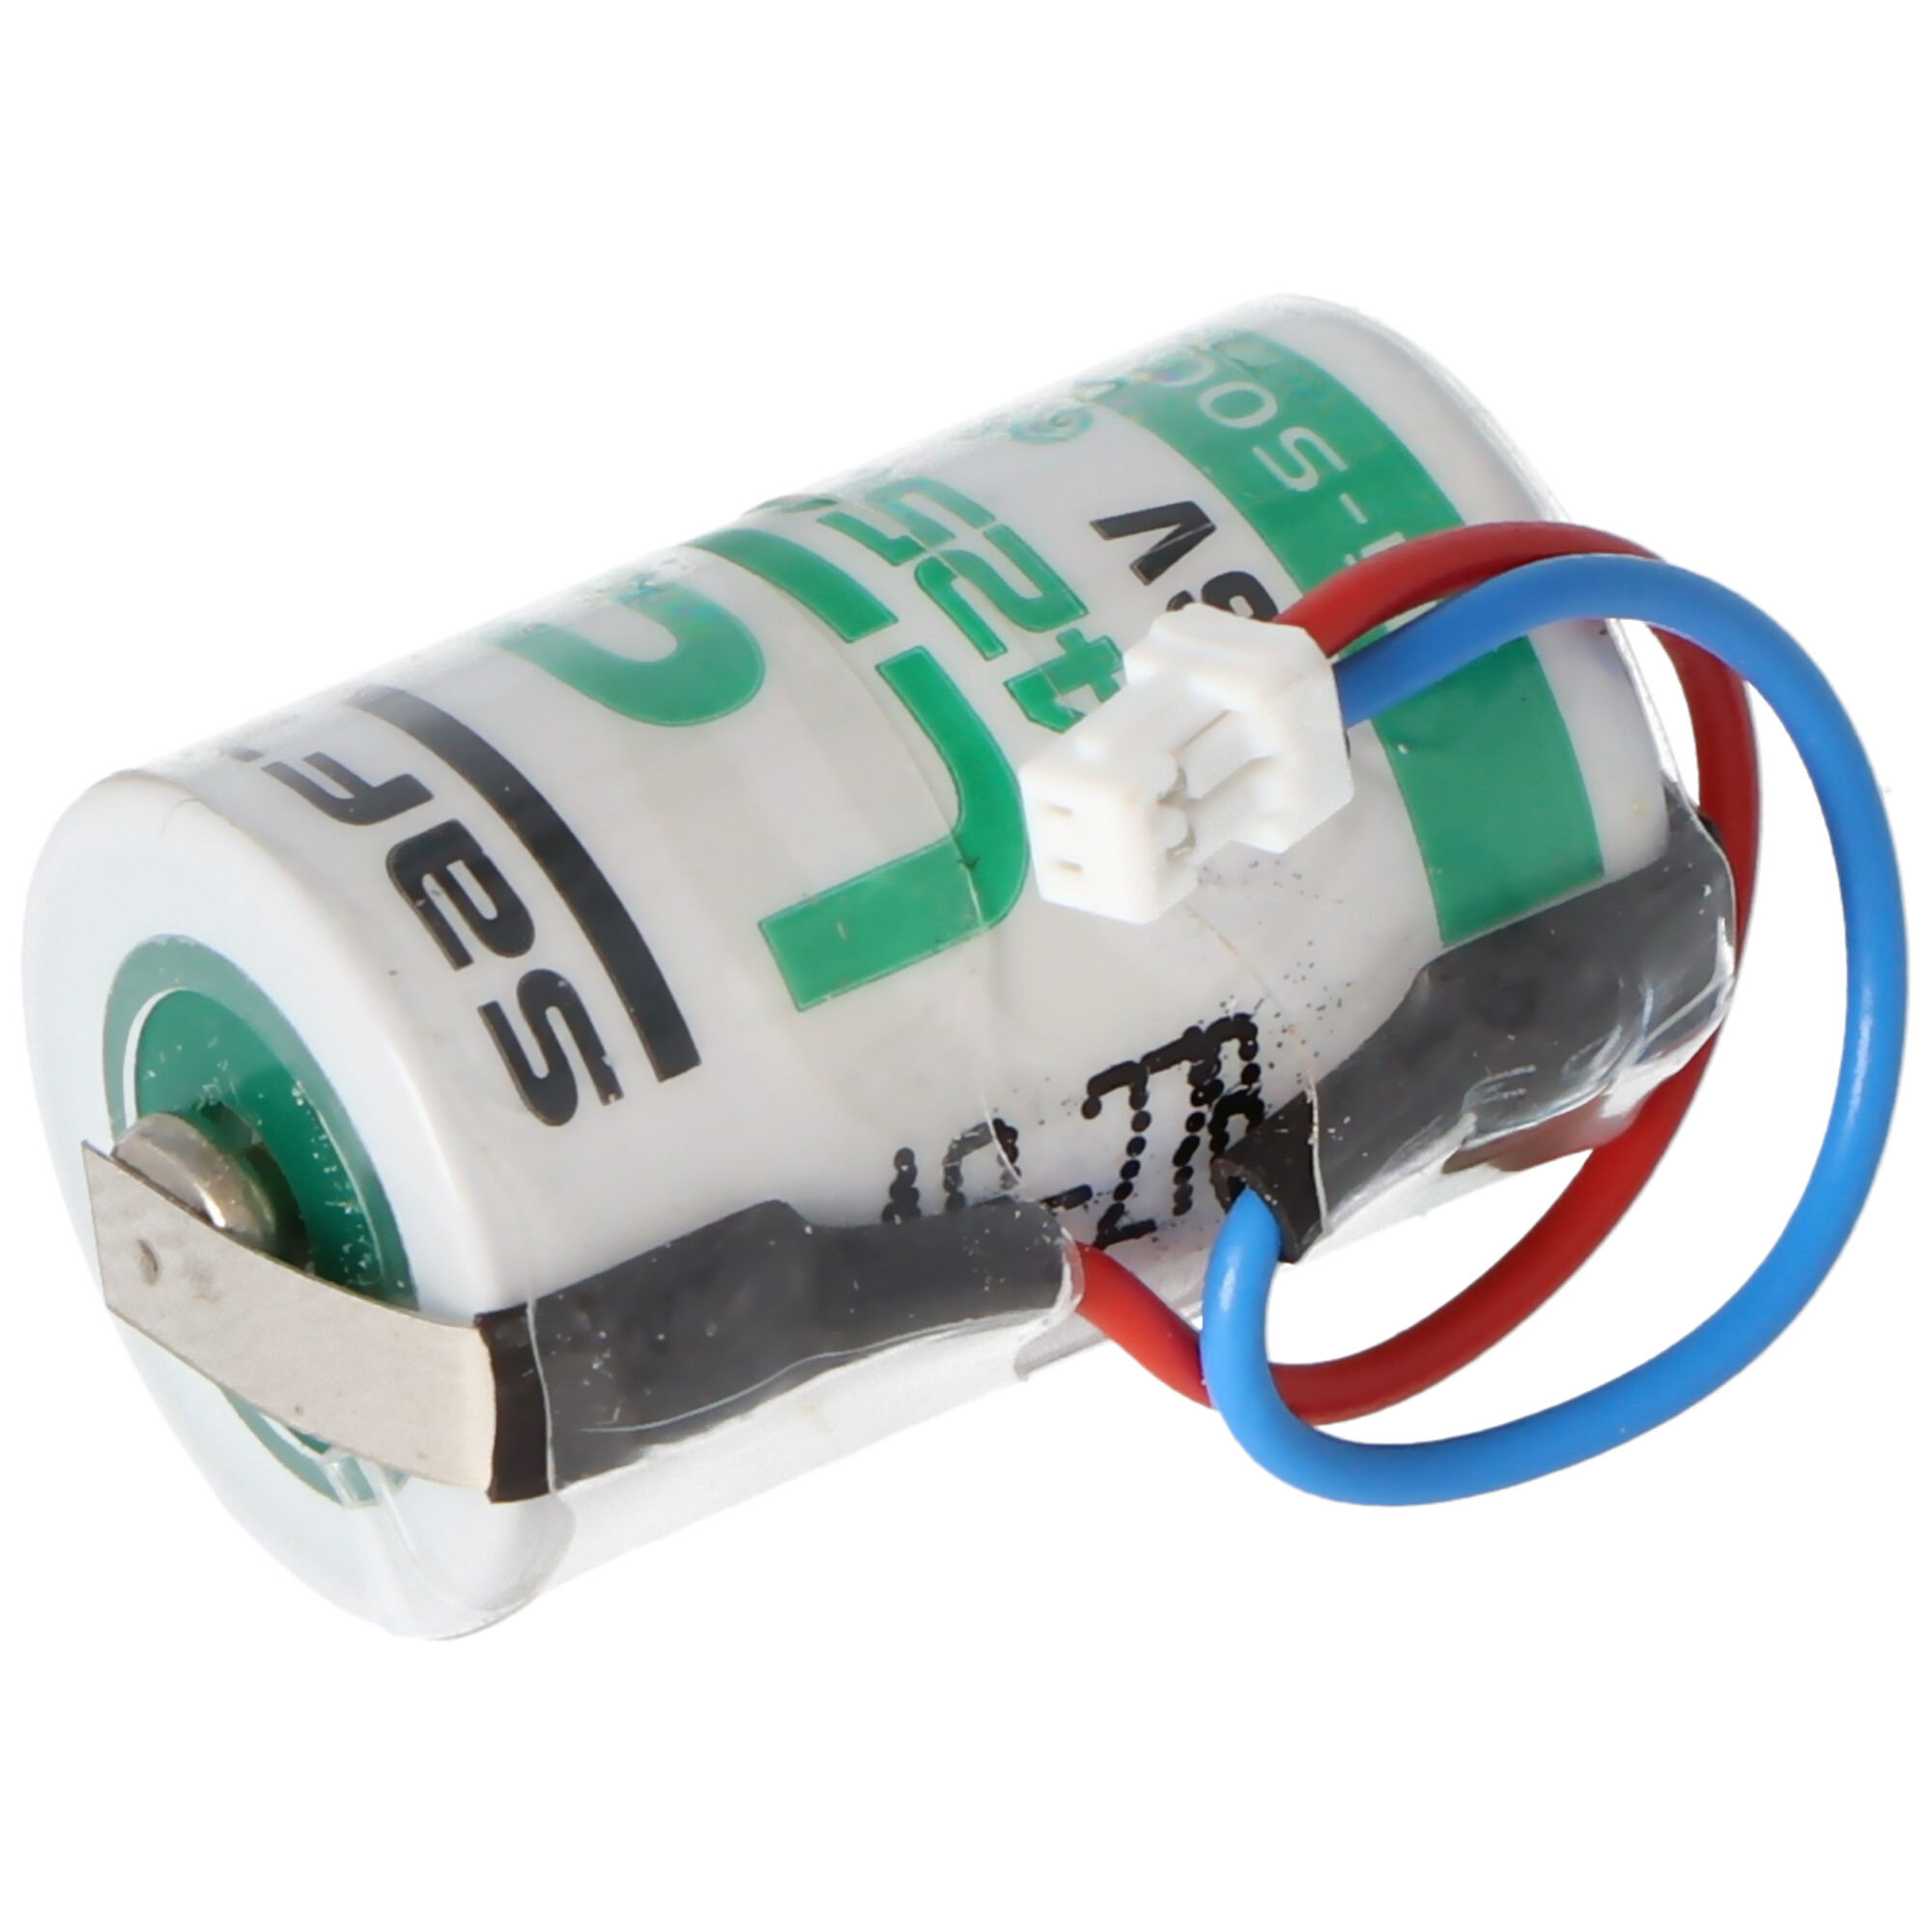 Saft Lithium 3,6V Batterie LS14250 mit Kabel und Stecker mittig an der Zelle raus